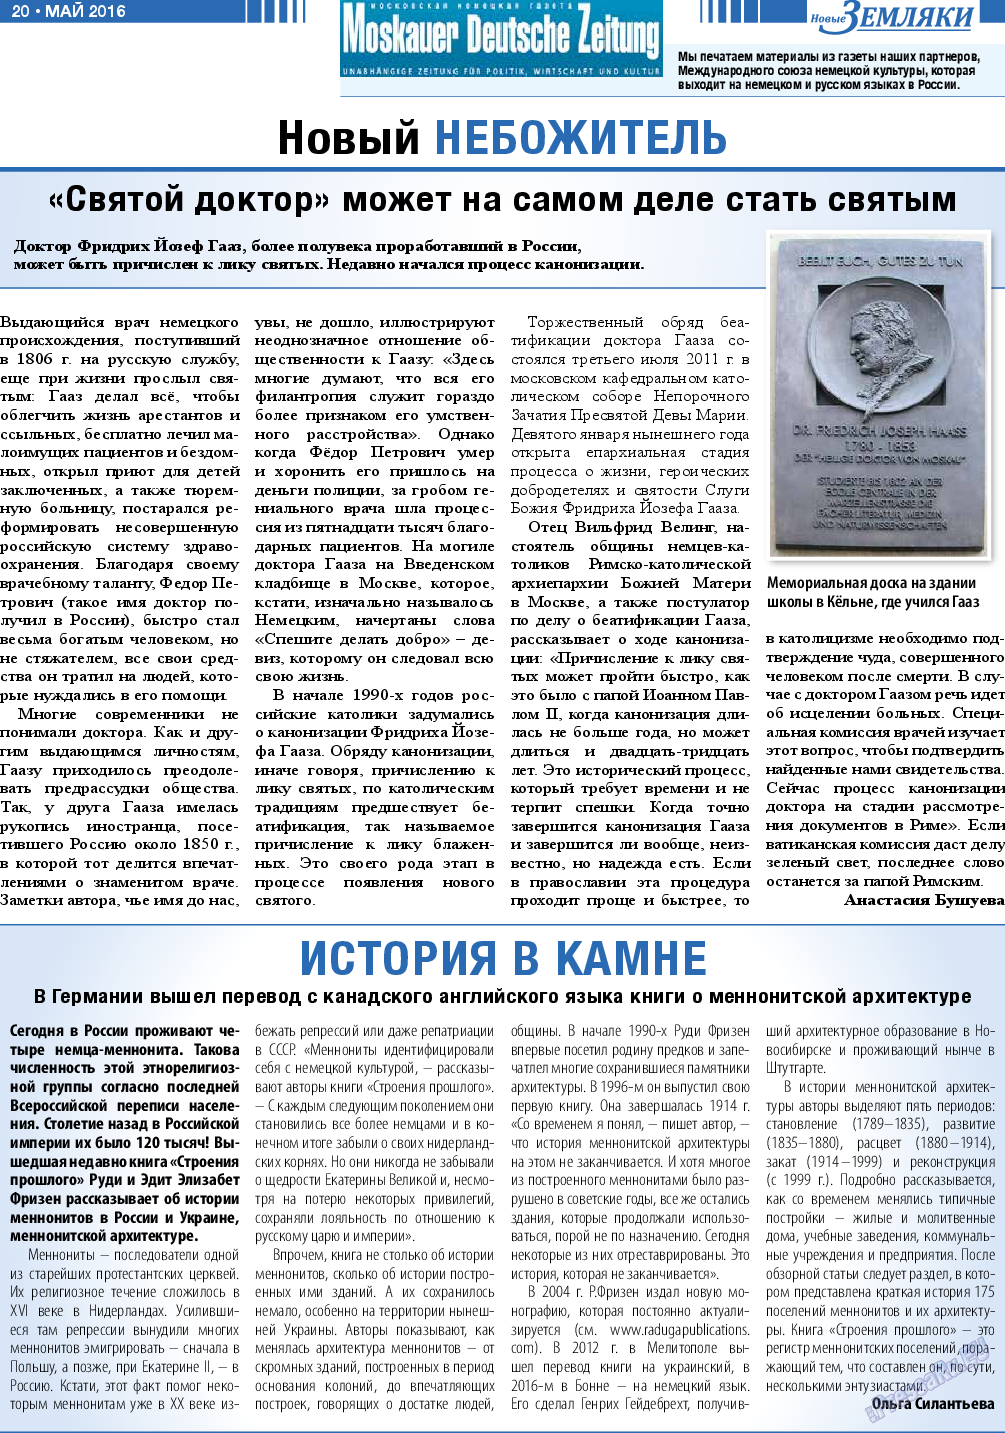 Новые Земляки, газета. 2016 №5 стр.20